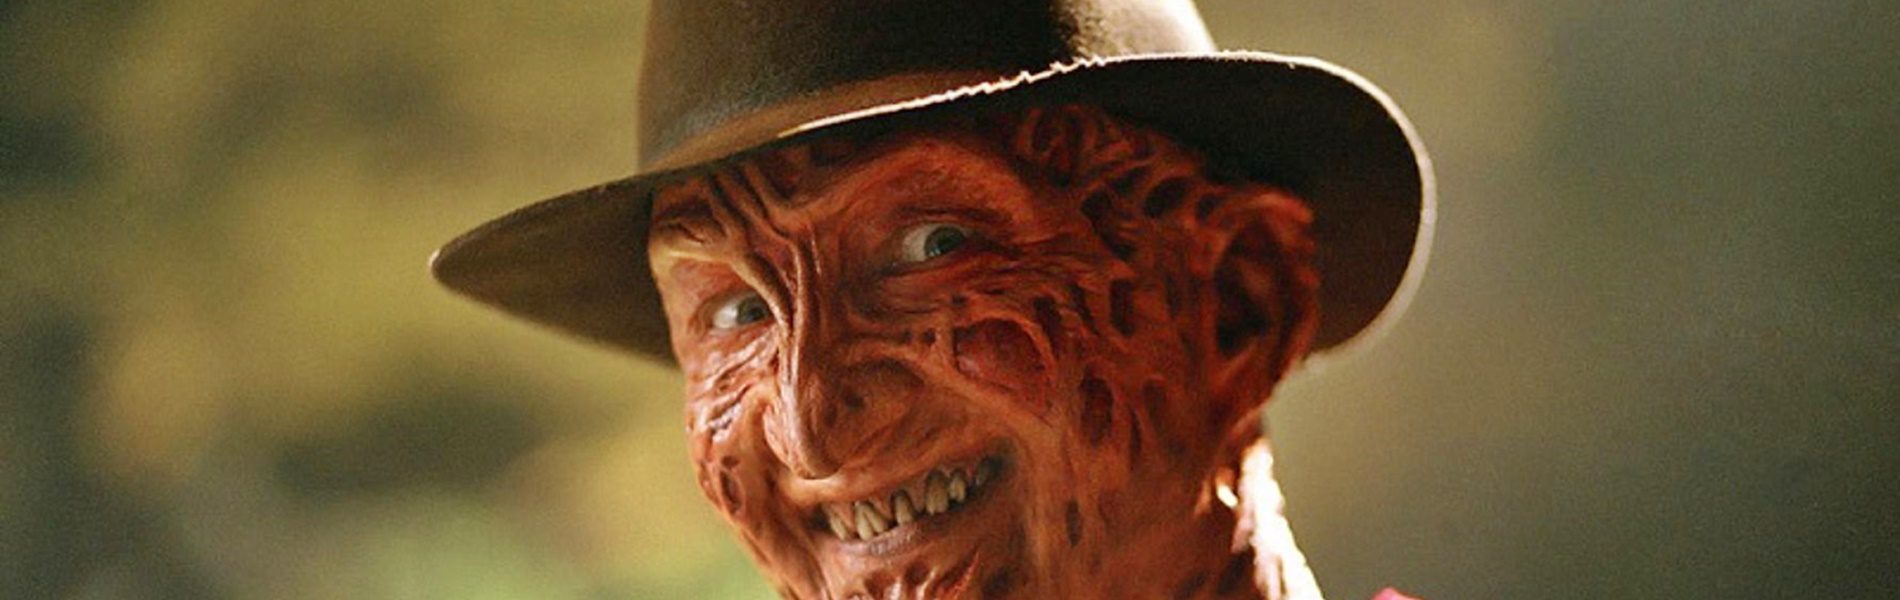 A Rémálom az Elm utcában ijesztő Freddy Kruegere a valóságban ILYEN jóképű nagypapa - Robert Englund